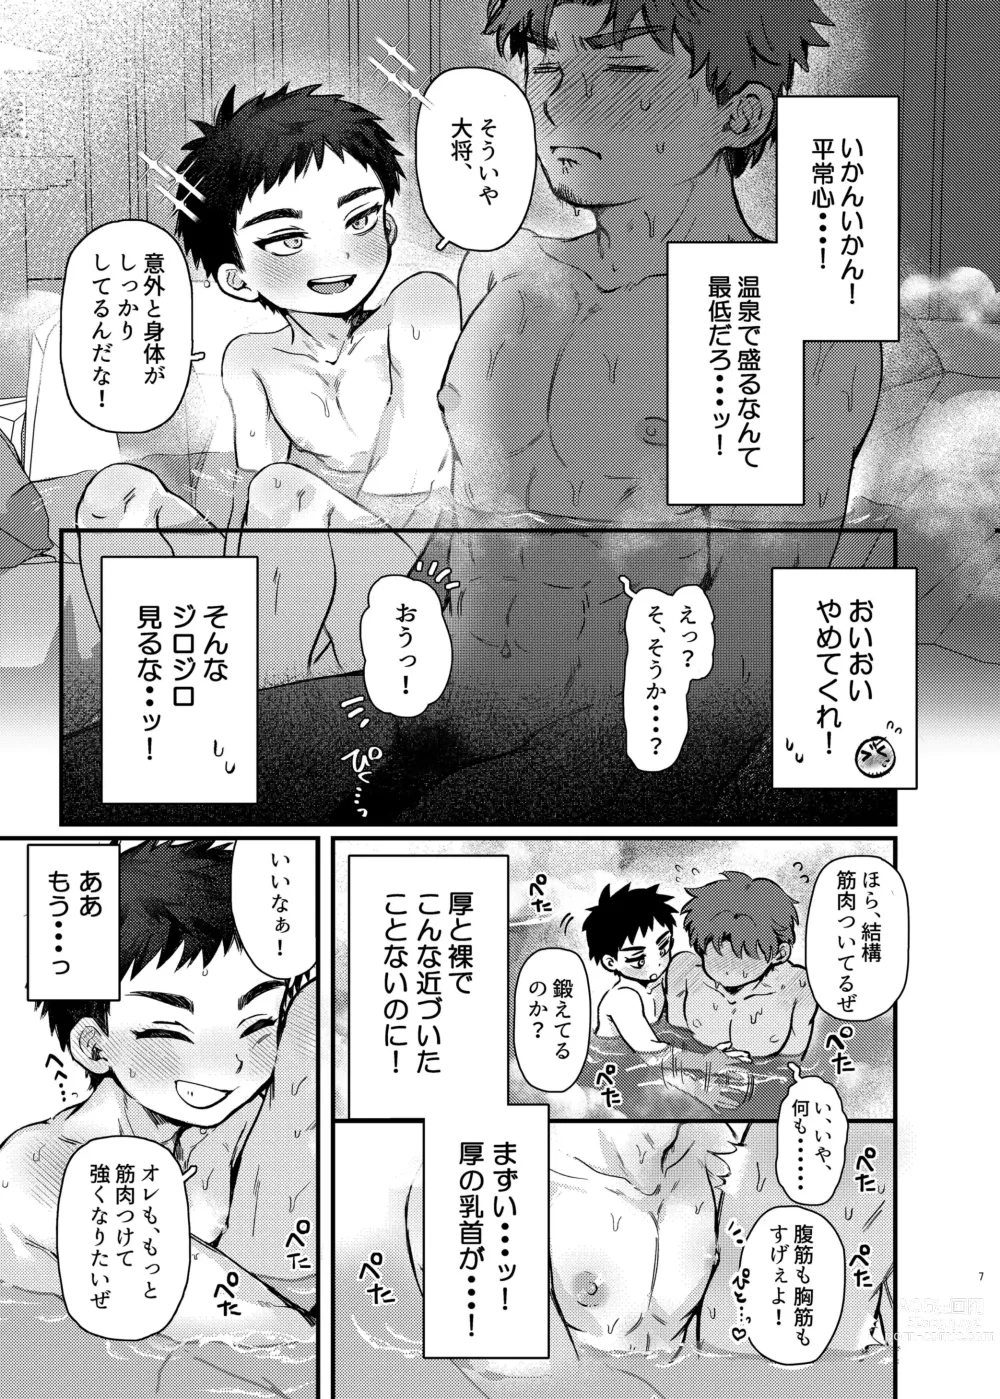 Page 6 of doujinshi Taishou, Nani mo Shinakute Ii no ka?